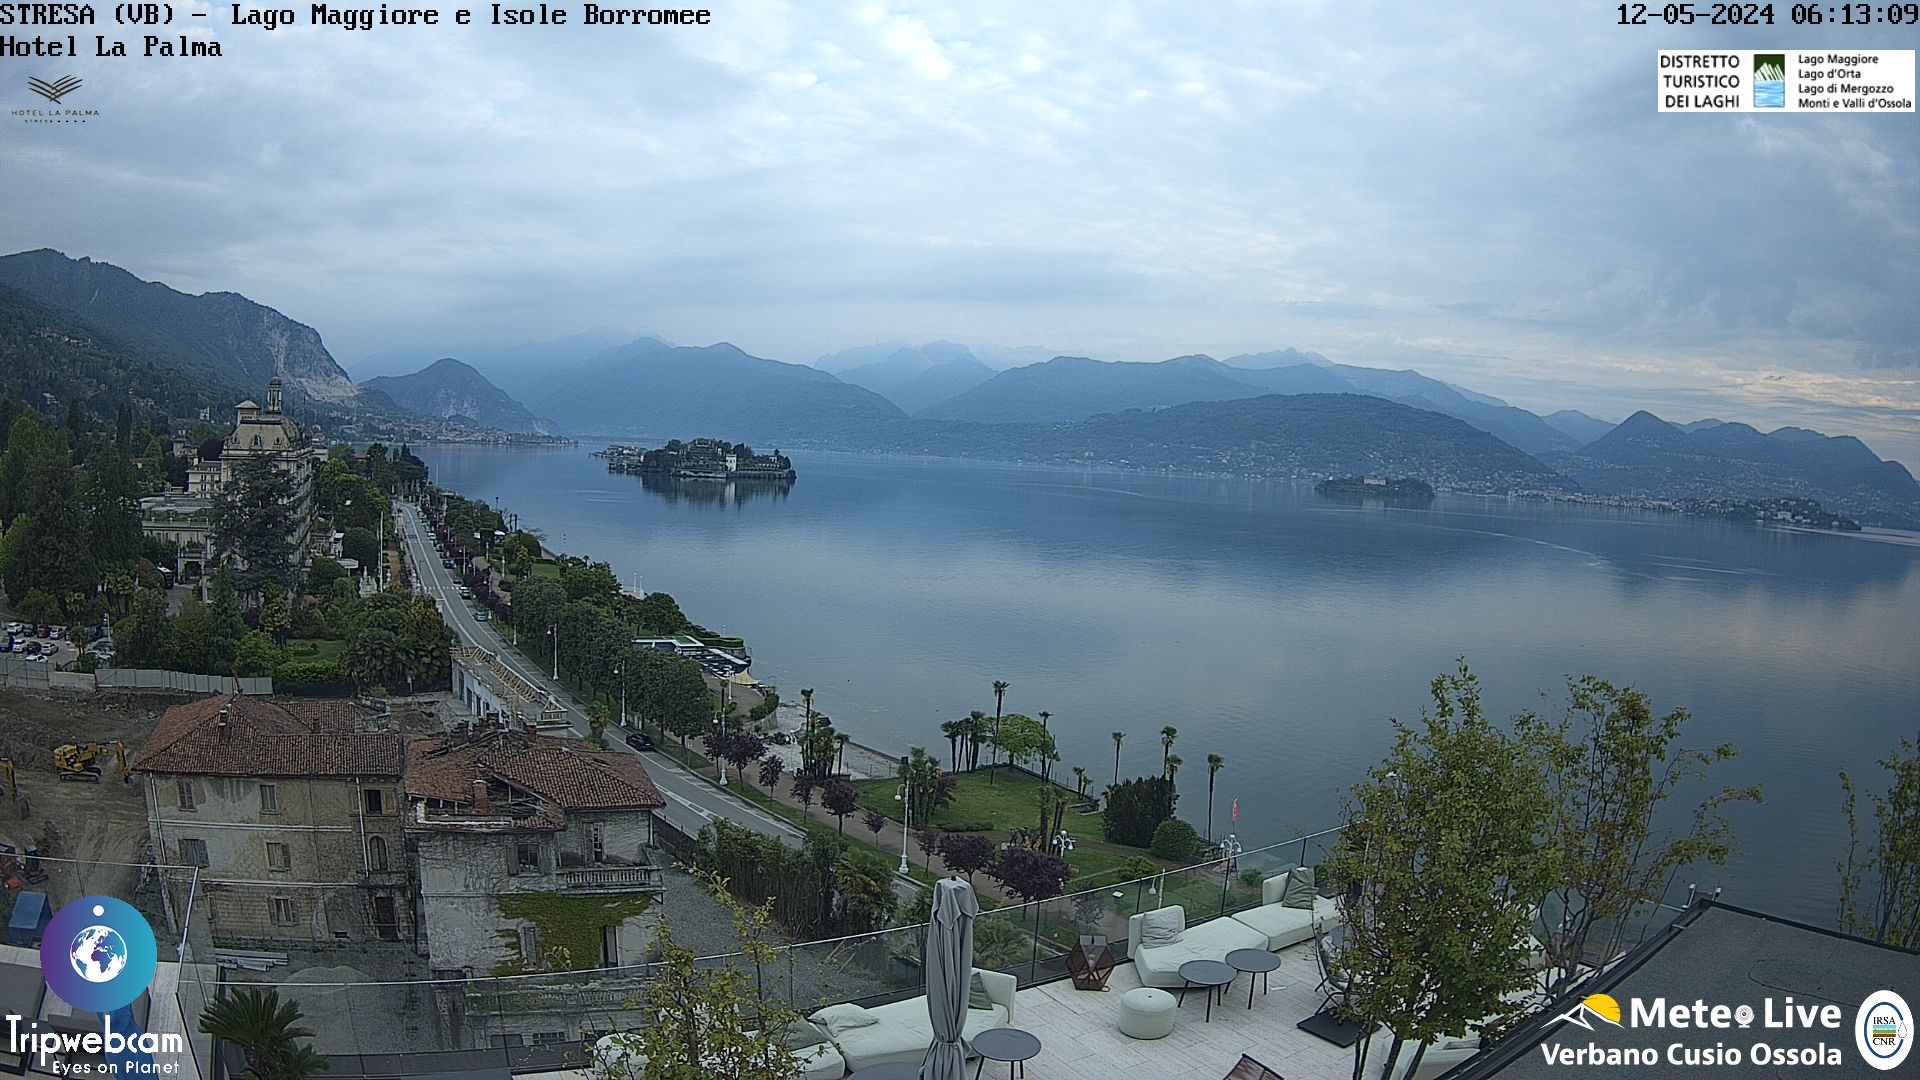 Stresa (Lago Maggiore) Ven. 07:18